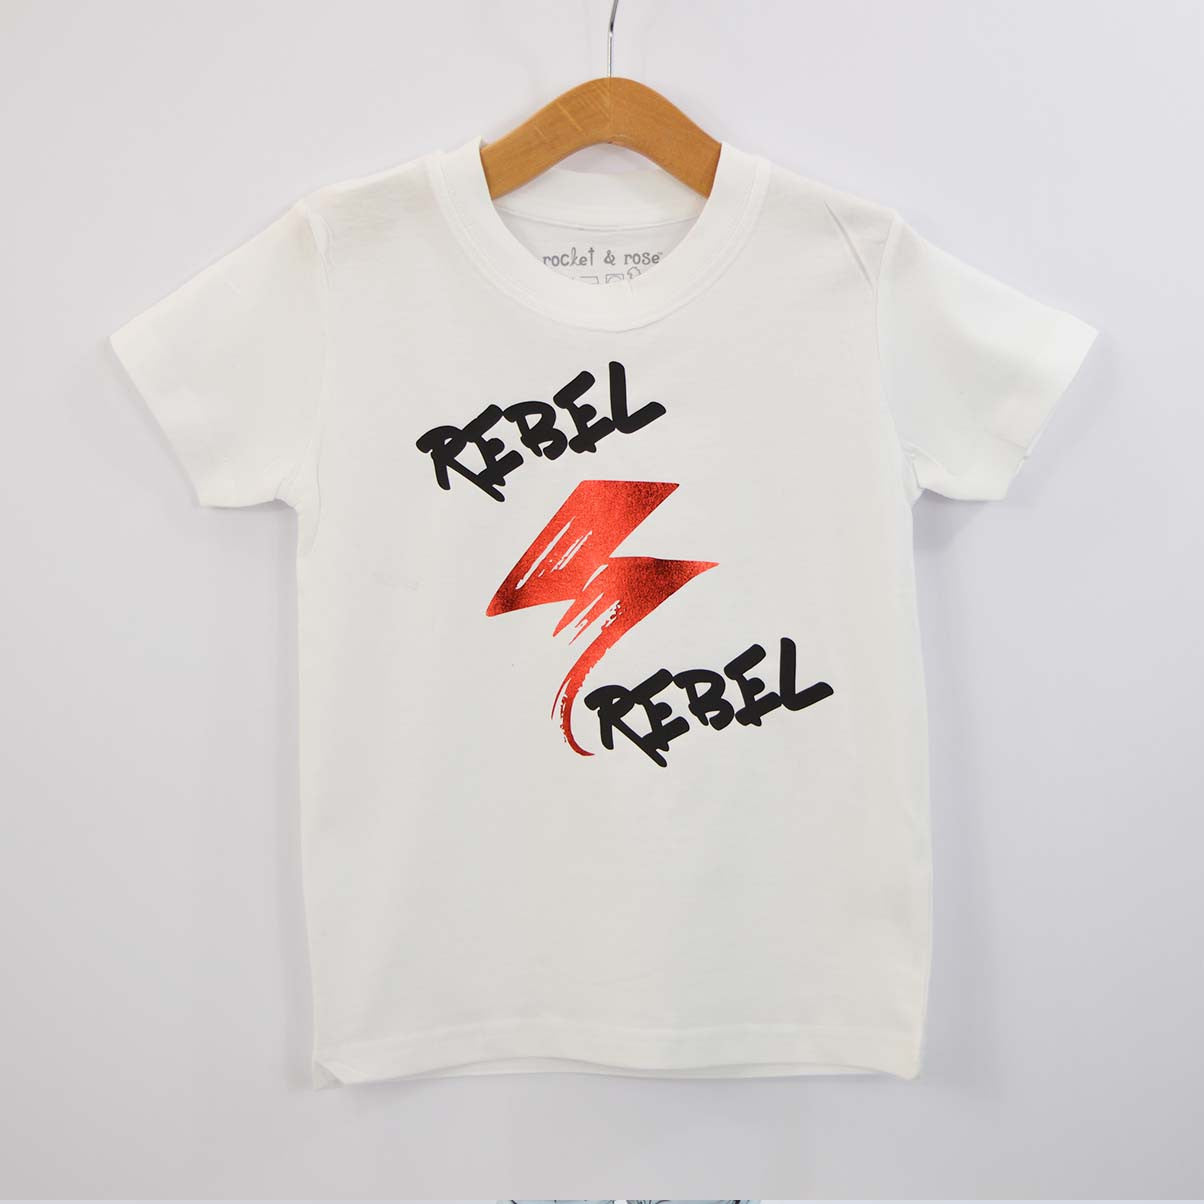 'Rebel Rebel' Cool Kids Slogan T-Shirt – Rocket & Rose